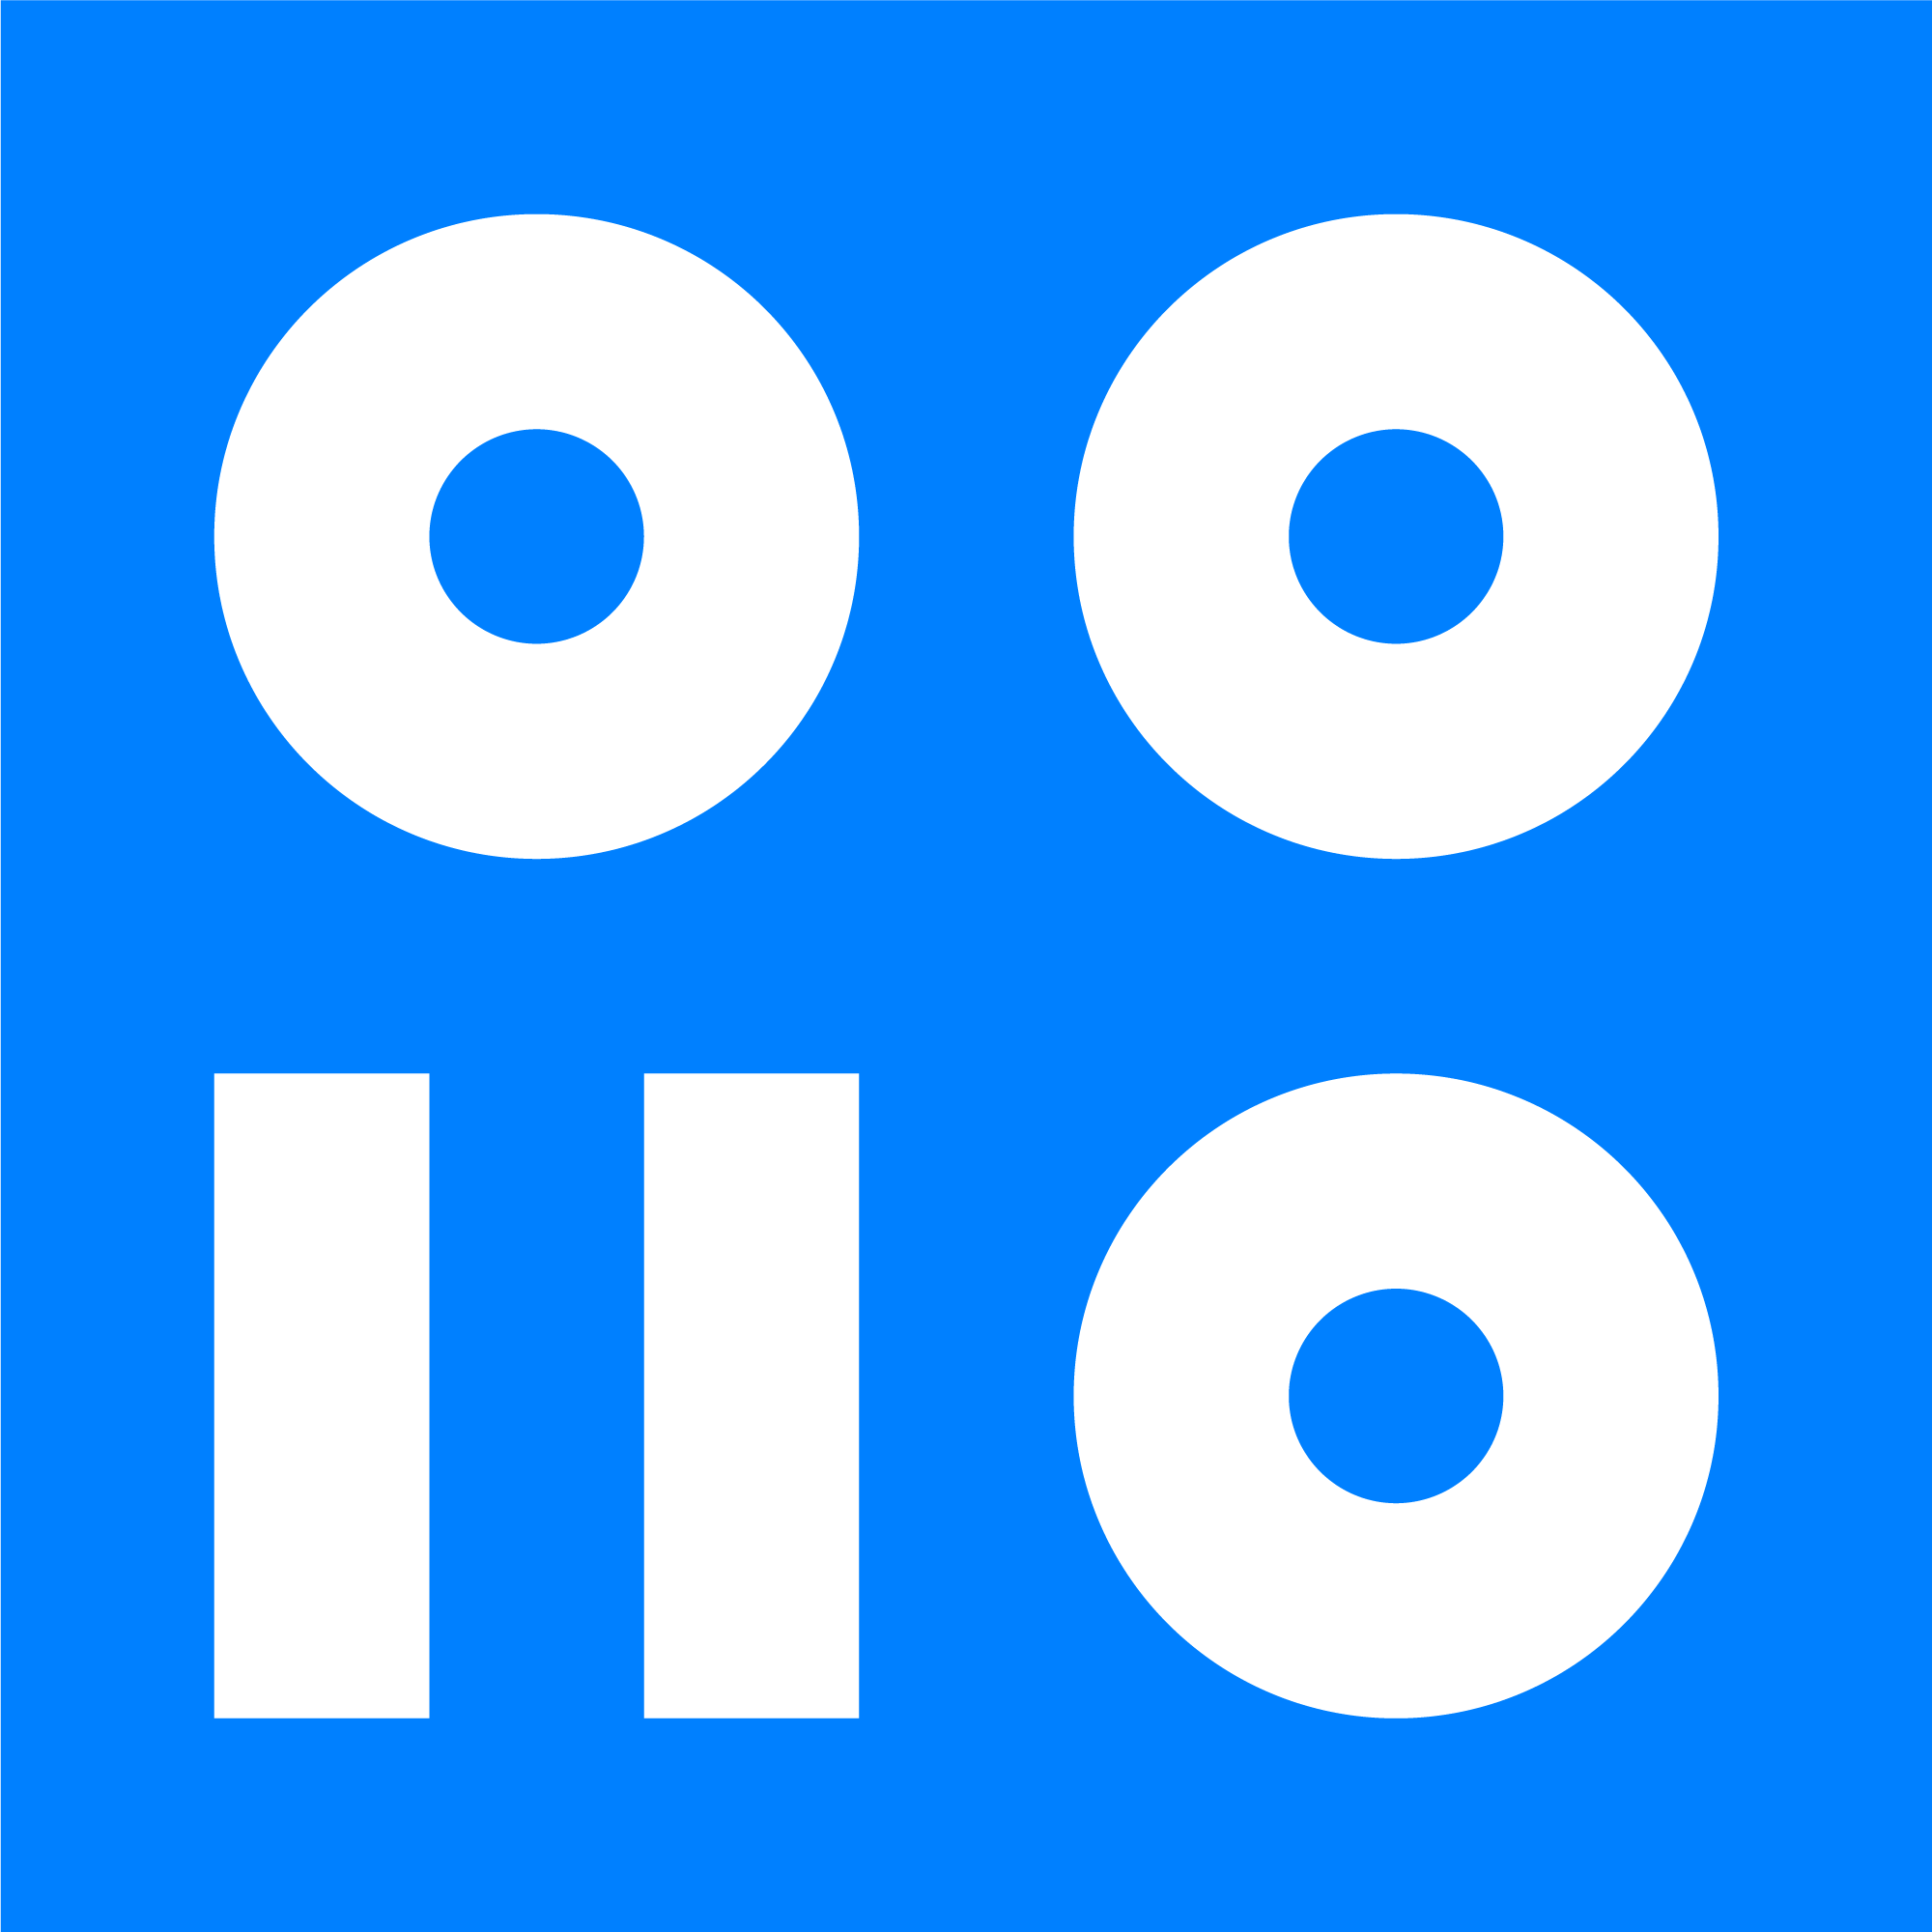 logo for Nomios UK&I Limited